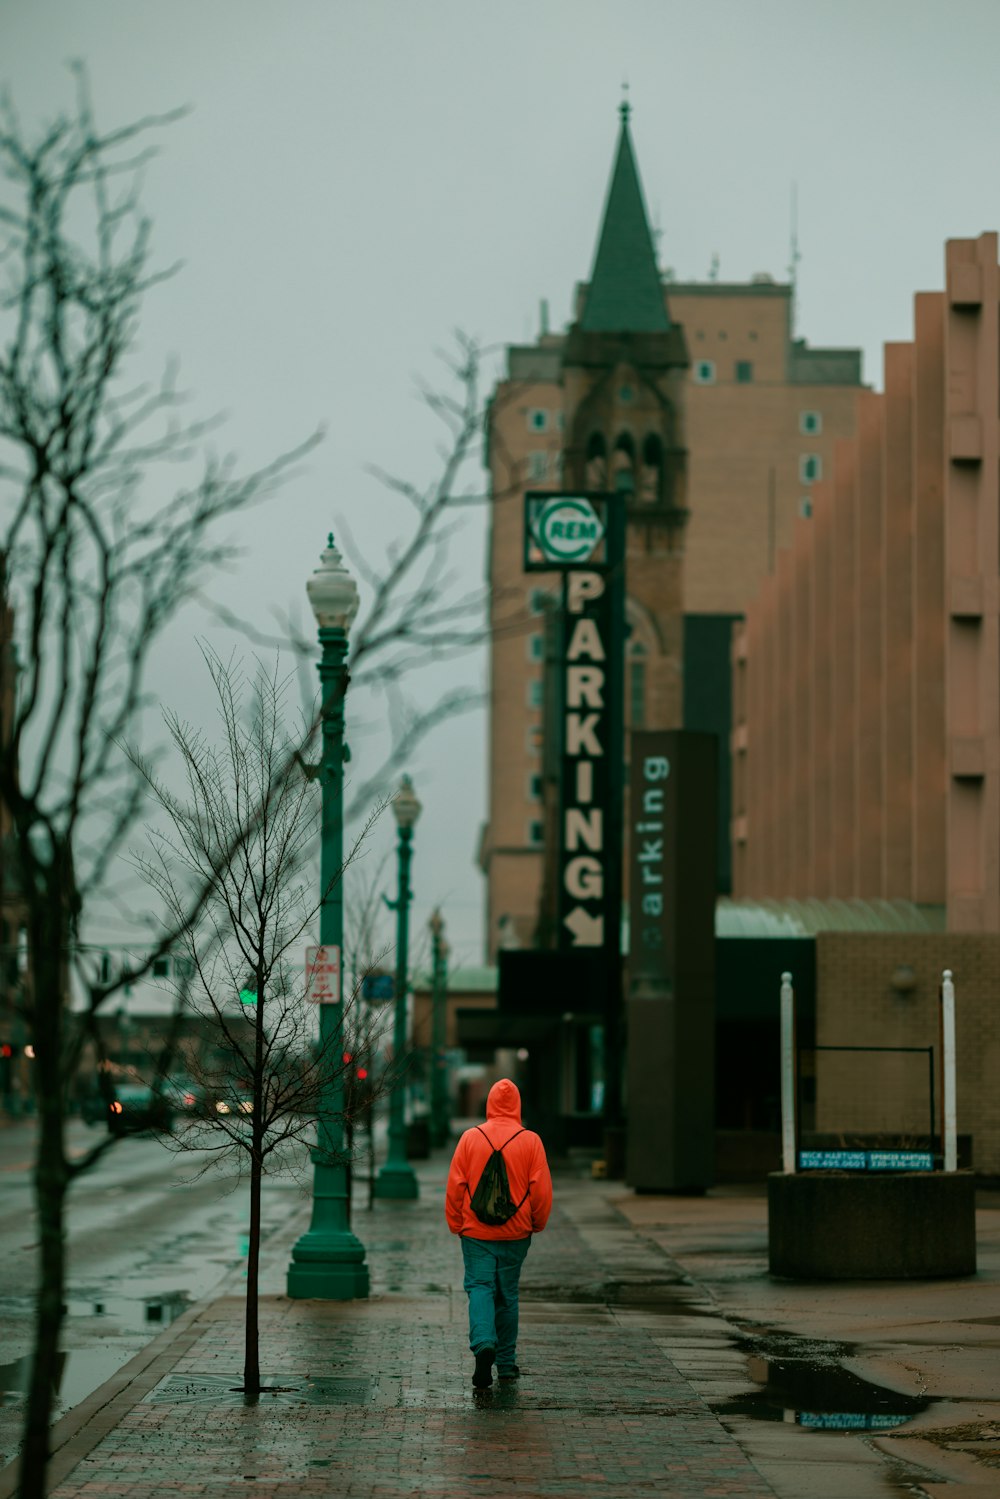 Eine Person in einer roten Jacke geht die Straße entlang